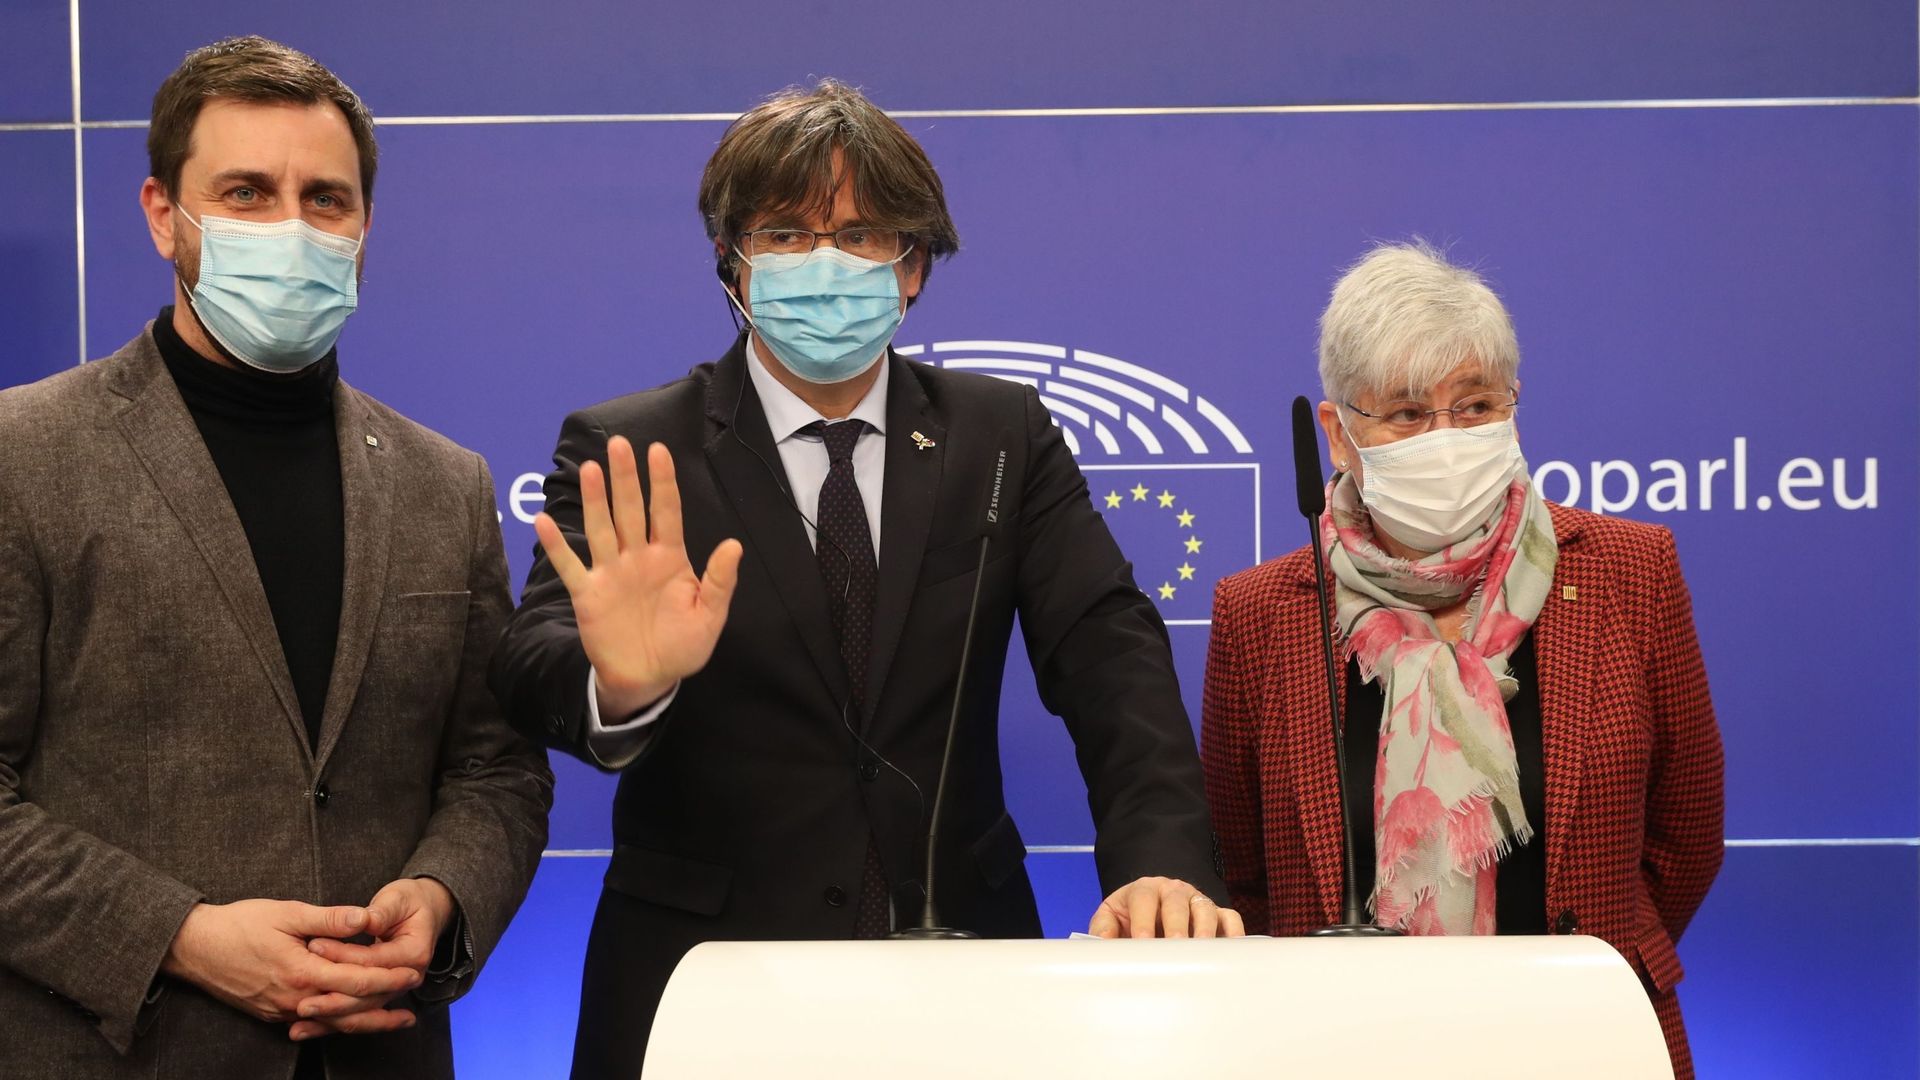 De gauche à droite : Antoni Comin, Carles Puigdemont et Clara Ponsati dans la salle de presse du Parlement européen après le vote qui a mené au retrait de leur immunité parlementaire, le 9 mars 2021.